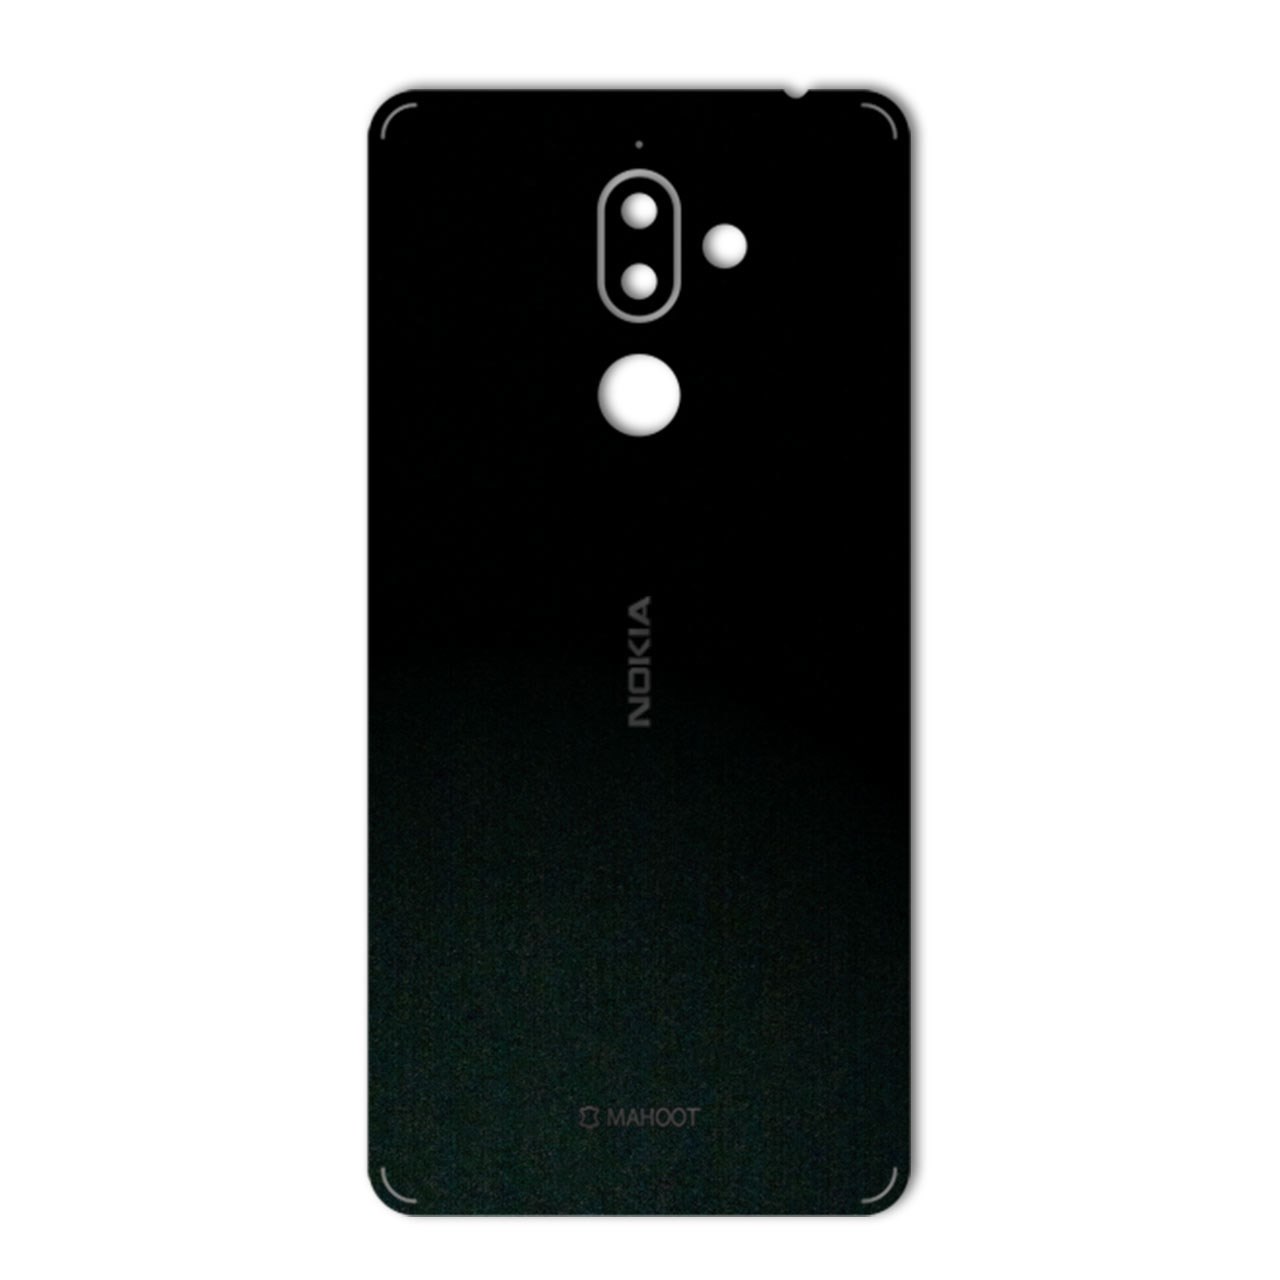 برچسب تزئینی ماهوت مدل Black-suede Special مناسب برای گوشی Nokia 7 Plus